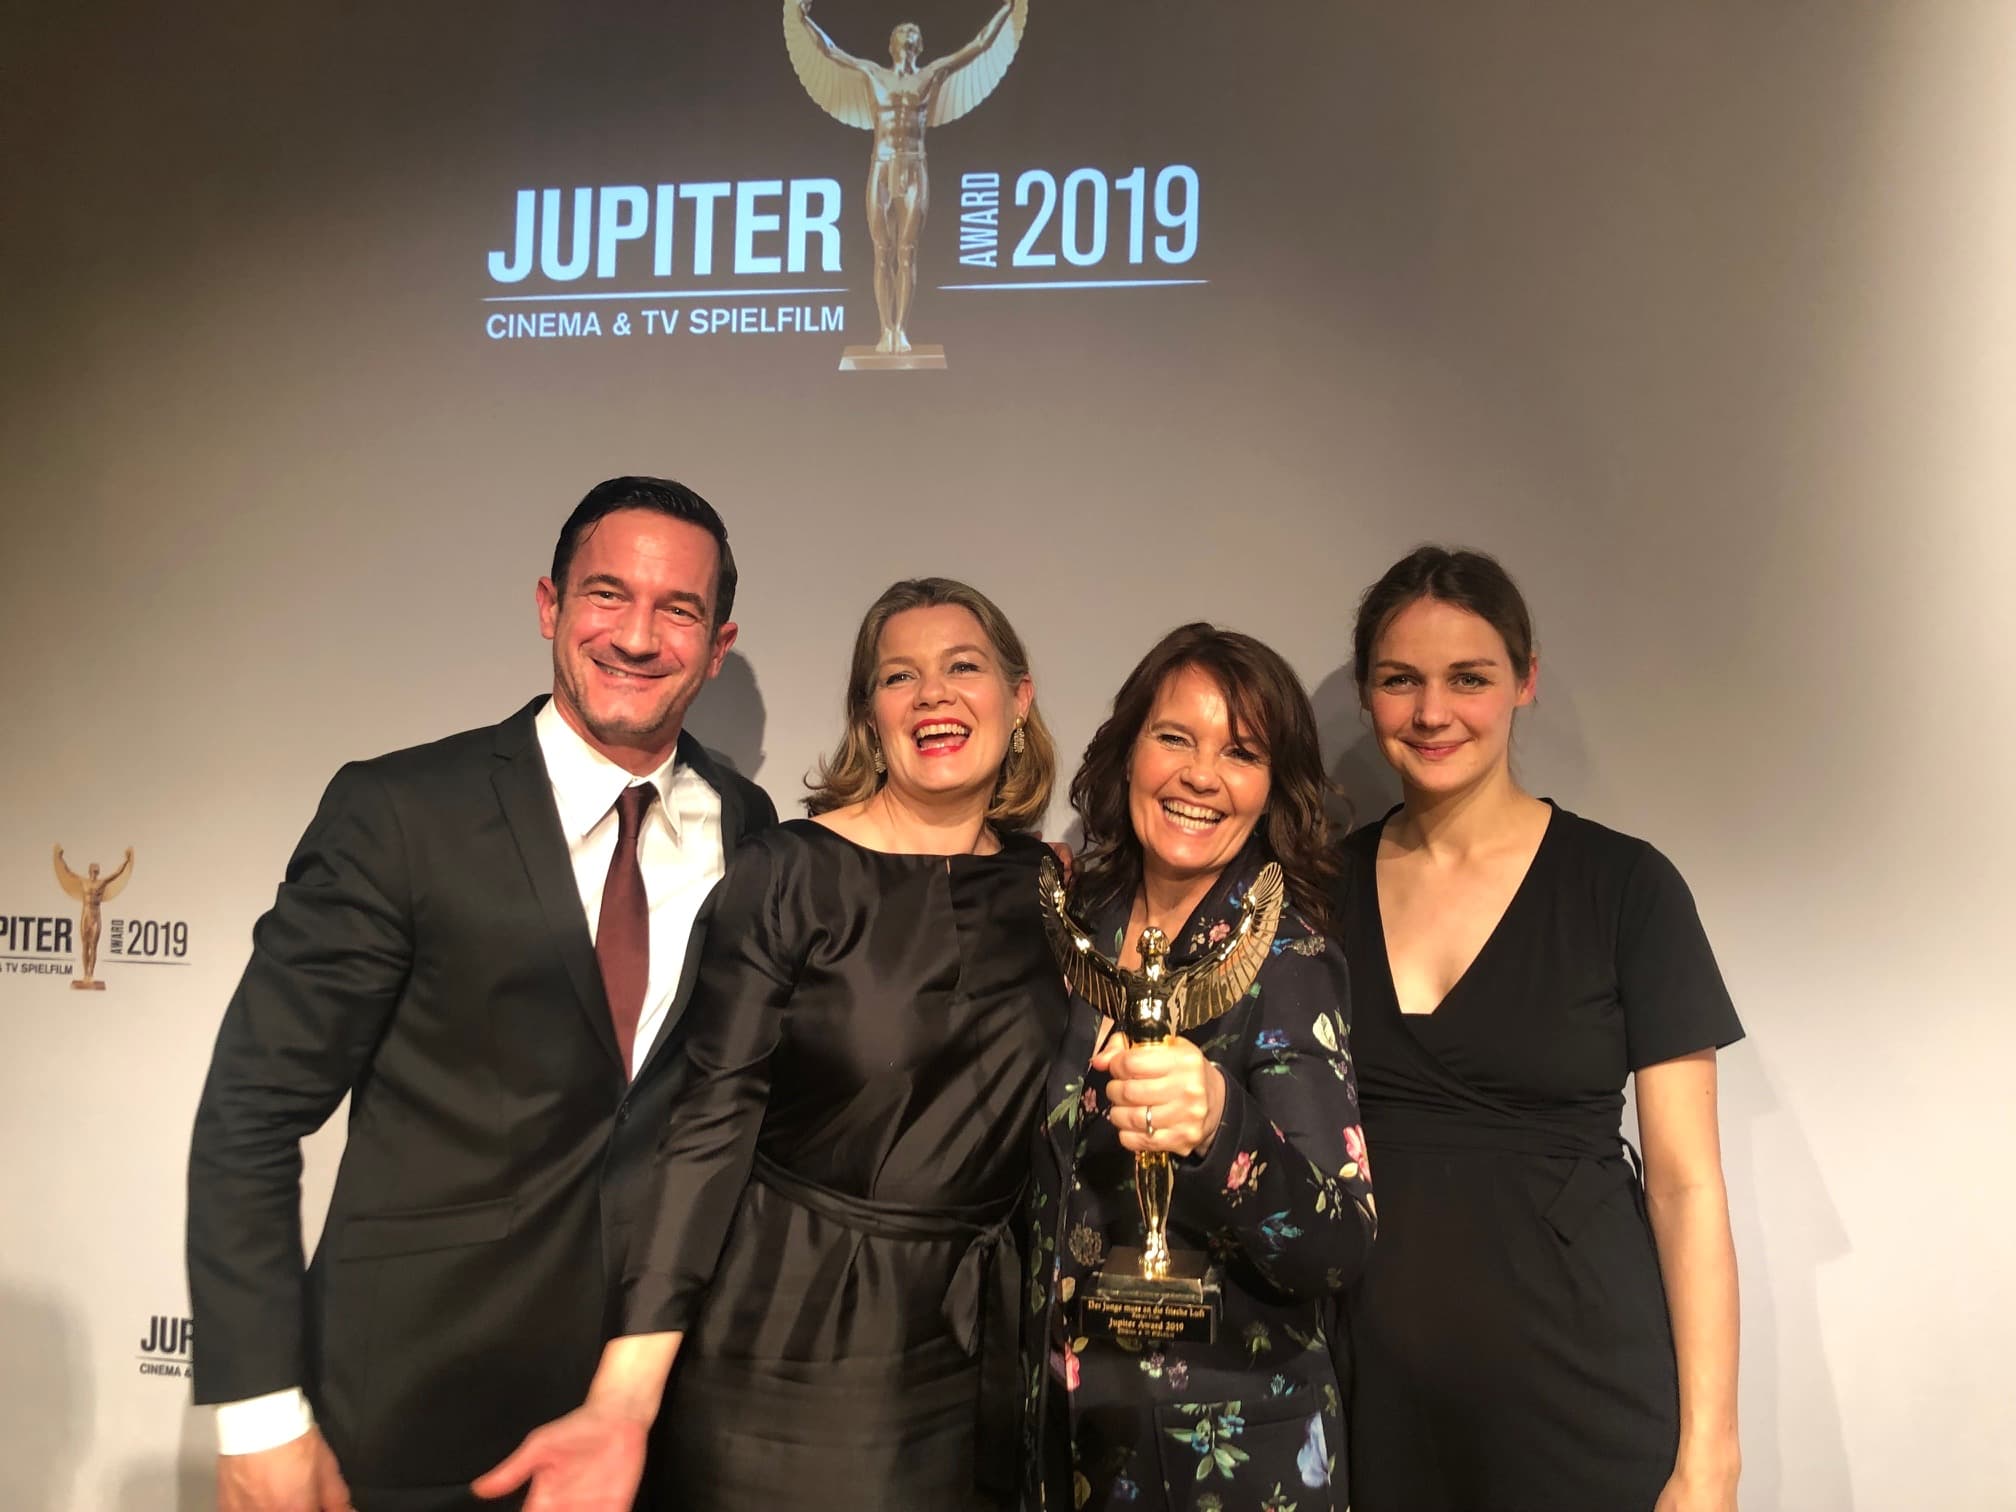 Soenke Moehring, Steffi Ackermann, Caroline Link und Luise Heyer mit dem Jupiter Award 2019